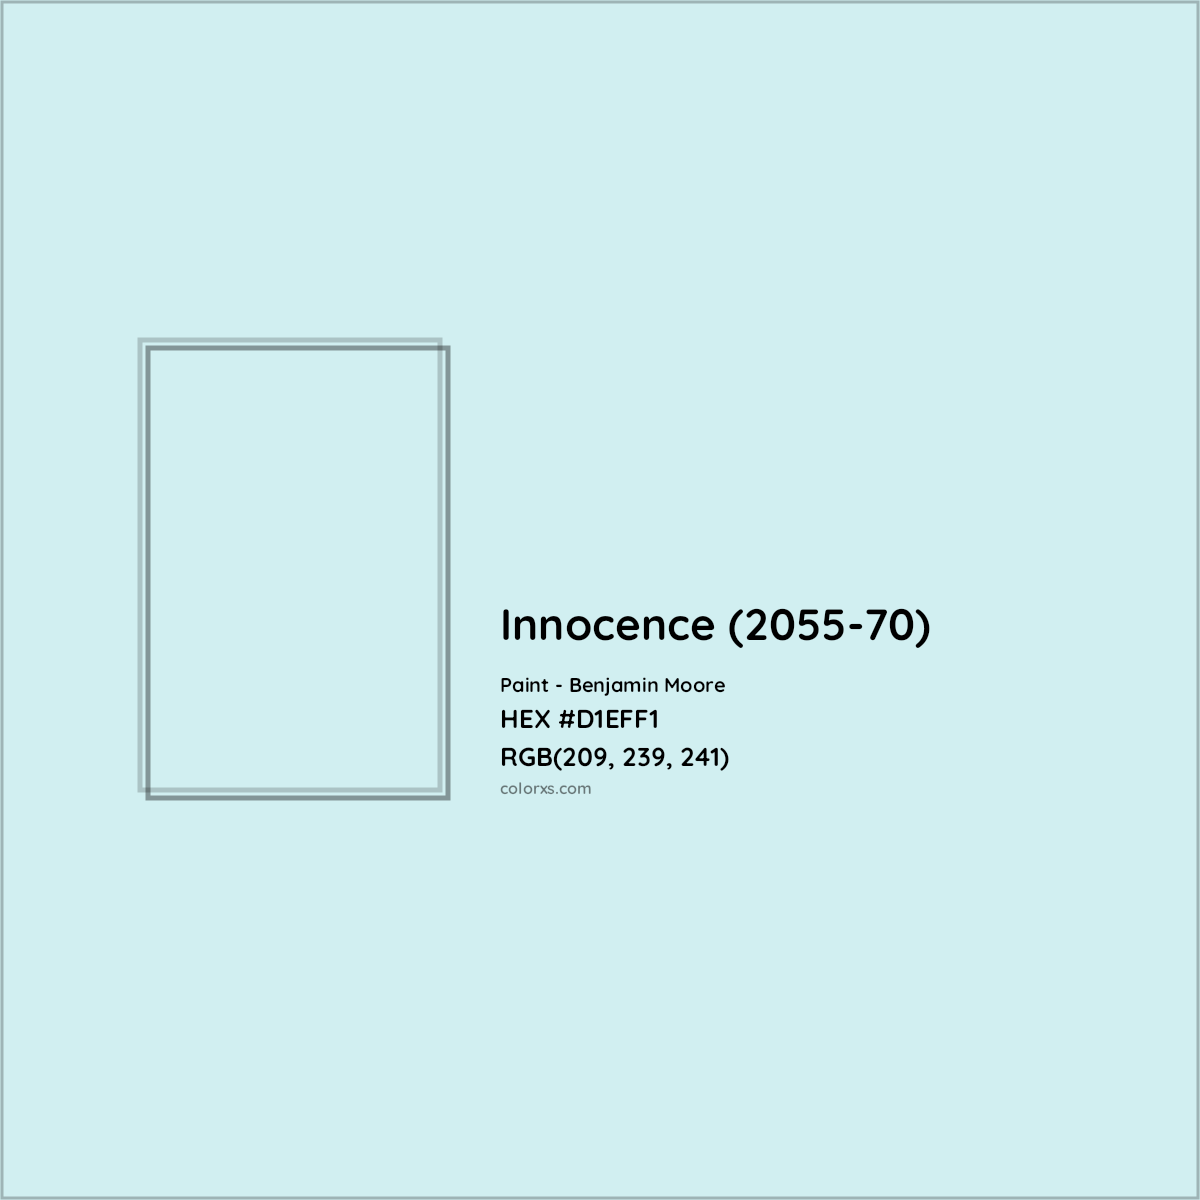 HEX #D1EFF1 Innocence (2055-70) Paint Benjamin Moore - Color Code